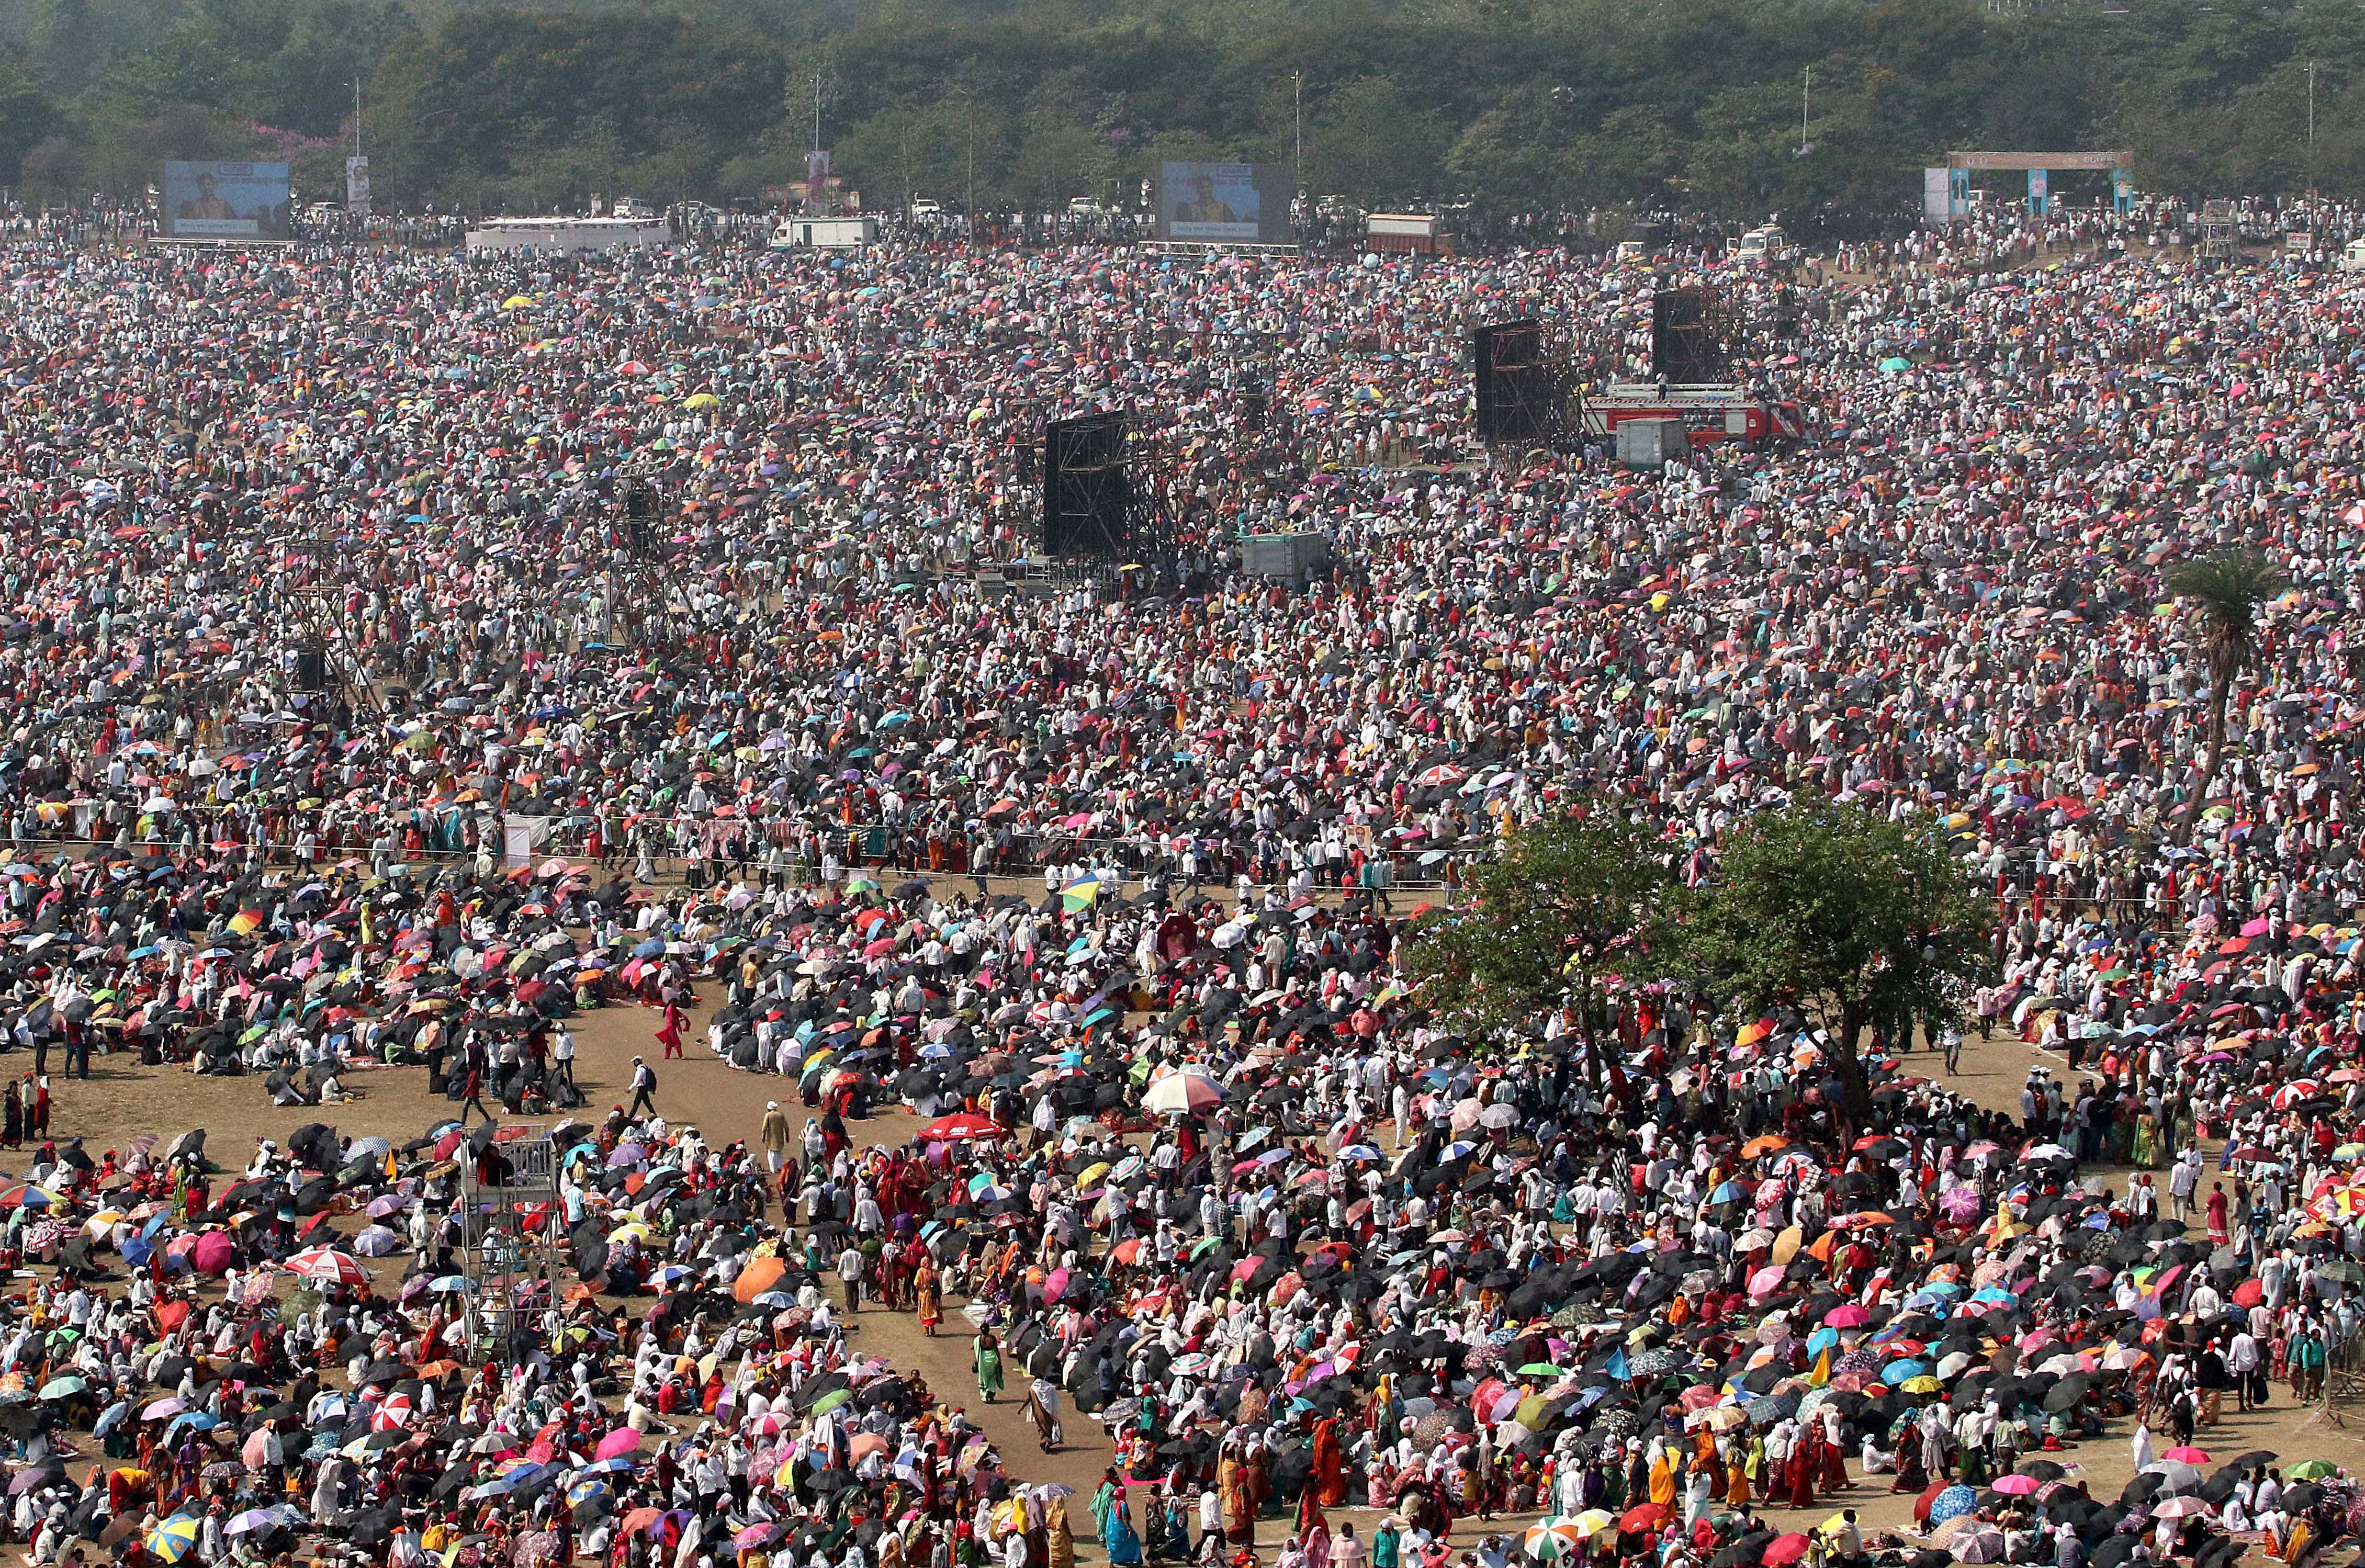 La gente asiste a una entrega de premios durante un día caluroso en las afueras de Mumbai, India, 16 de abril de 2023. REUTERS/Stringer/Archivo